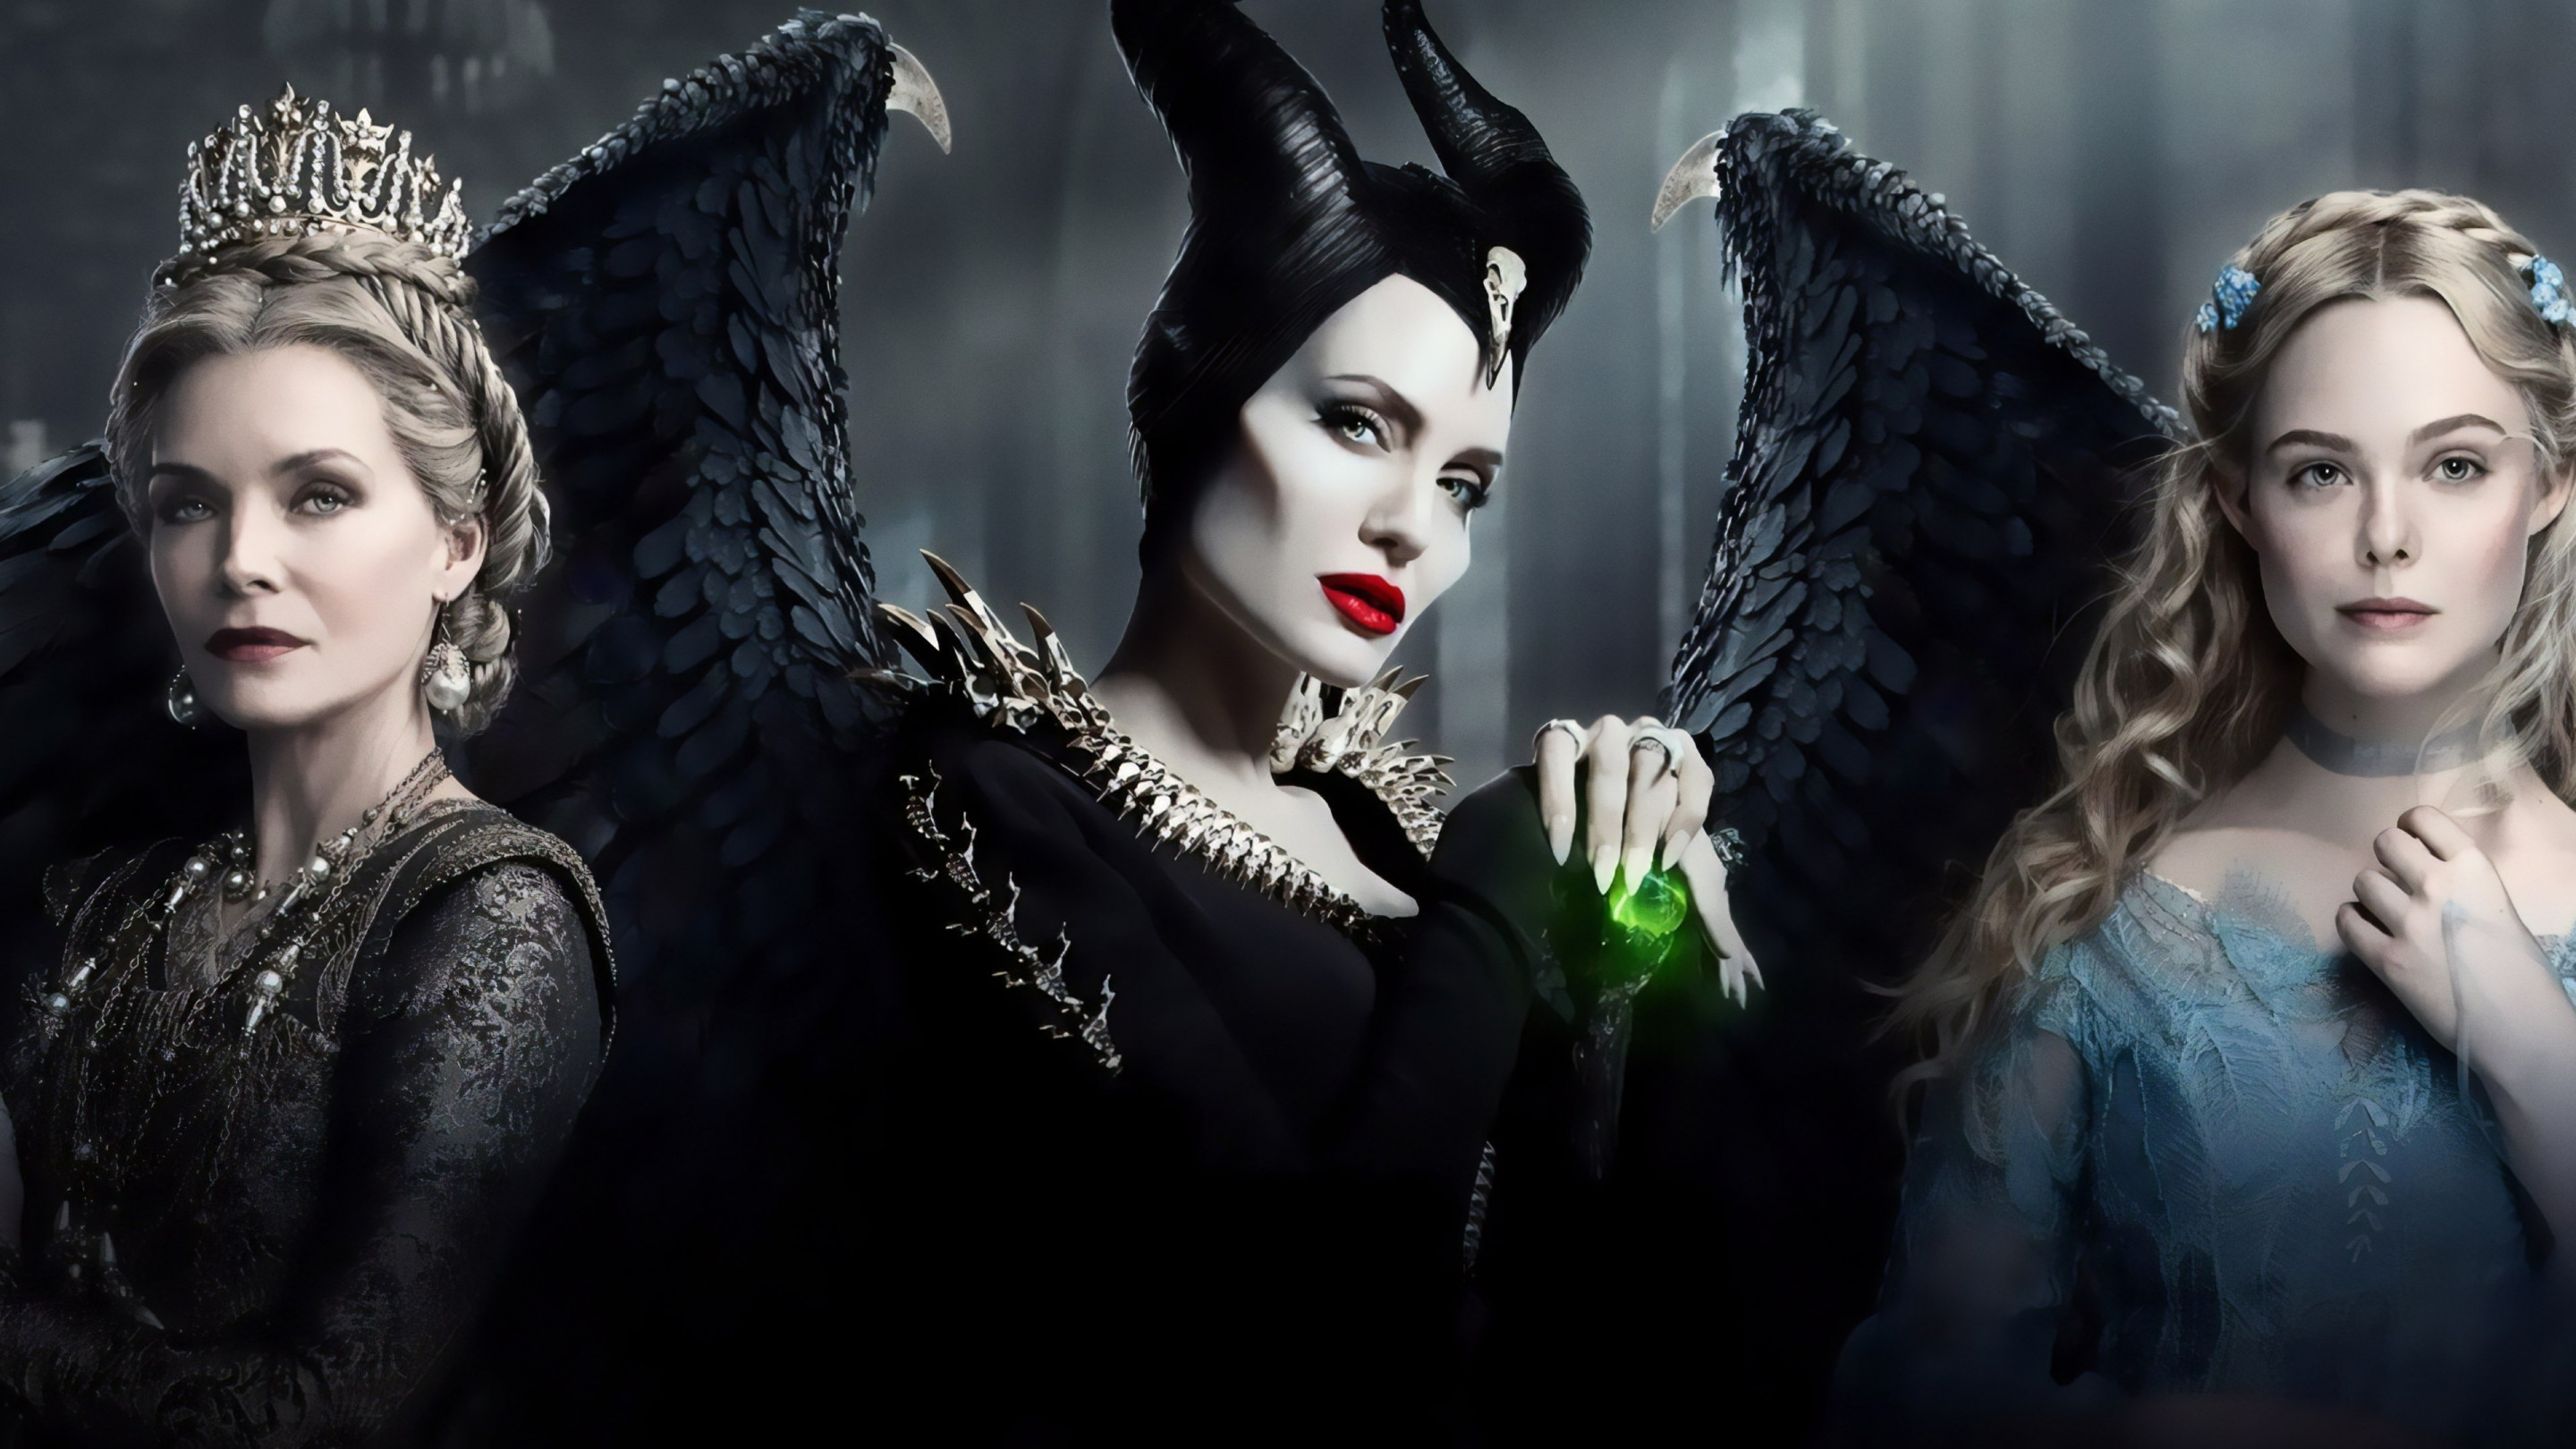 Maleficent: Mistress of Evil wallpaper 2880x1620